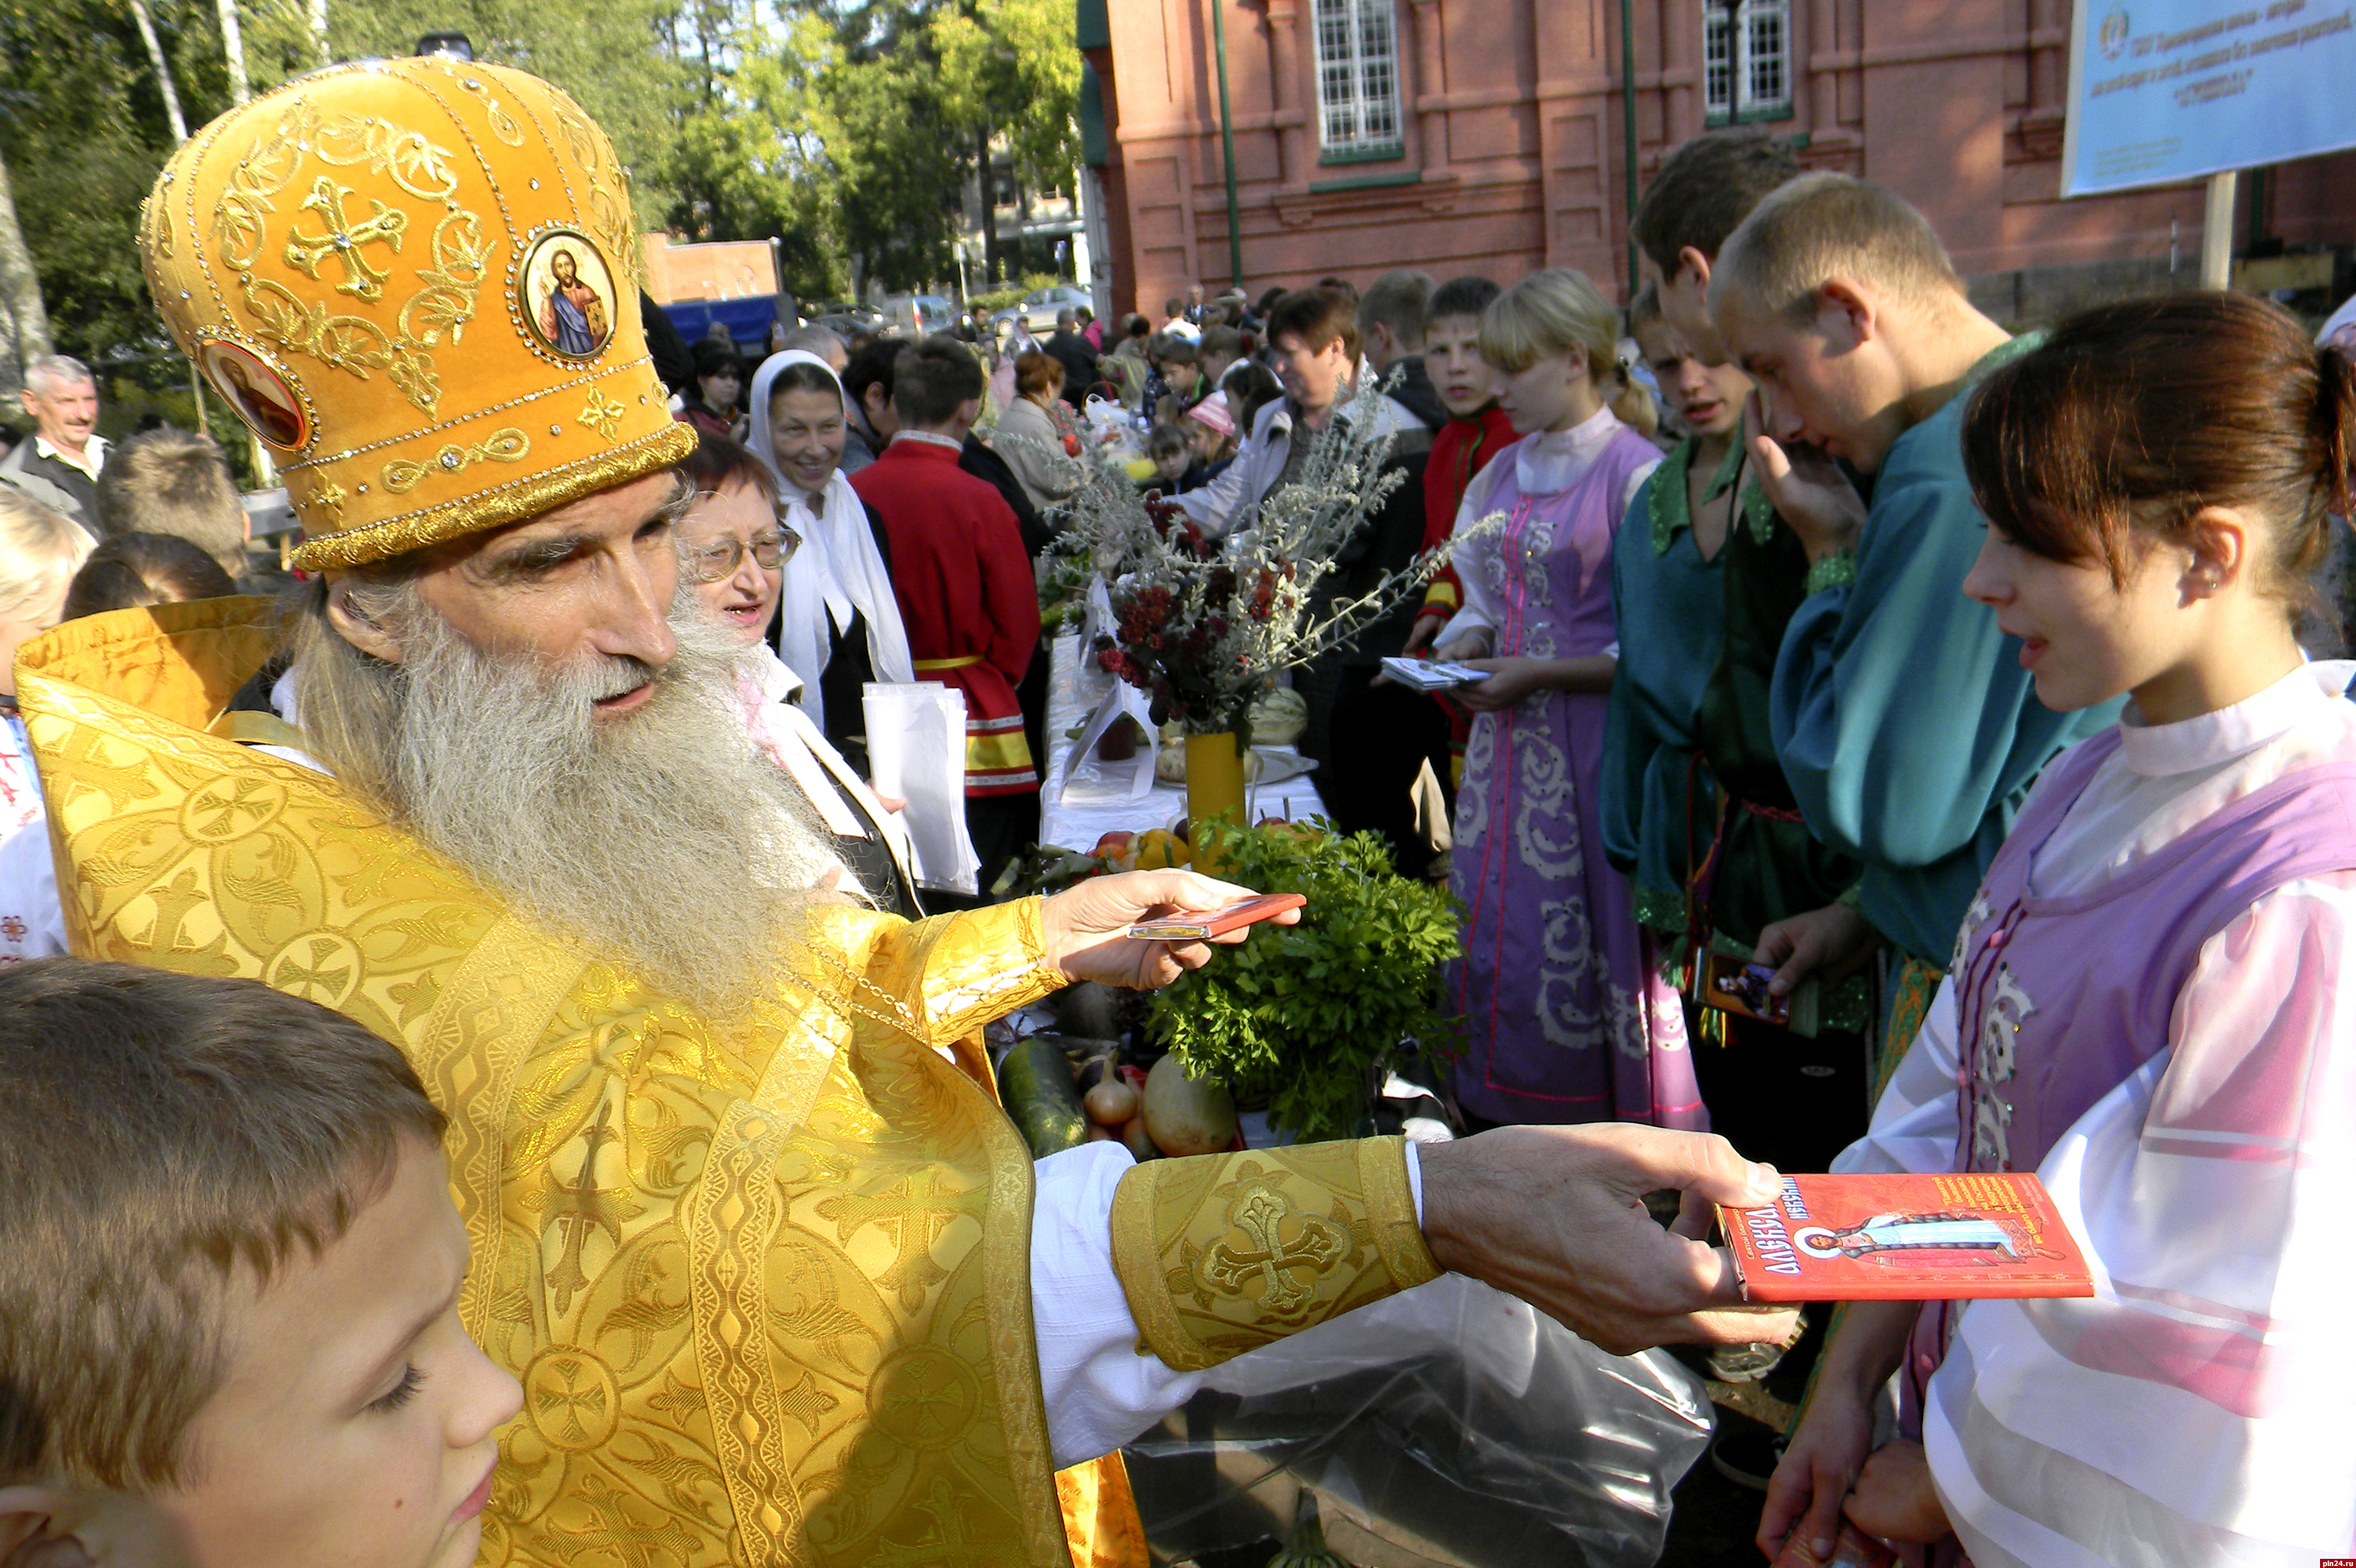 Батюшки на службе в желтом фото. Фотографии  священник показывает с праздником на украинском. Батюшки, новость то какая.